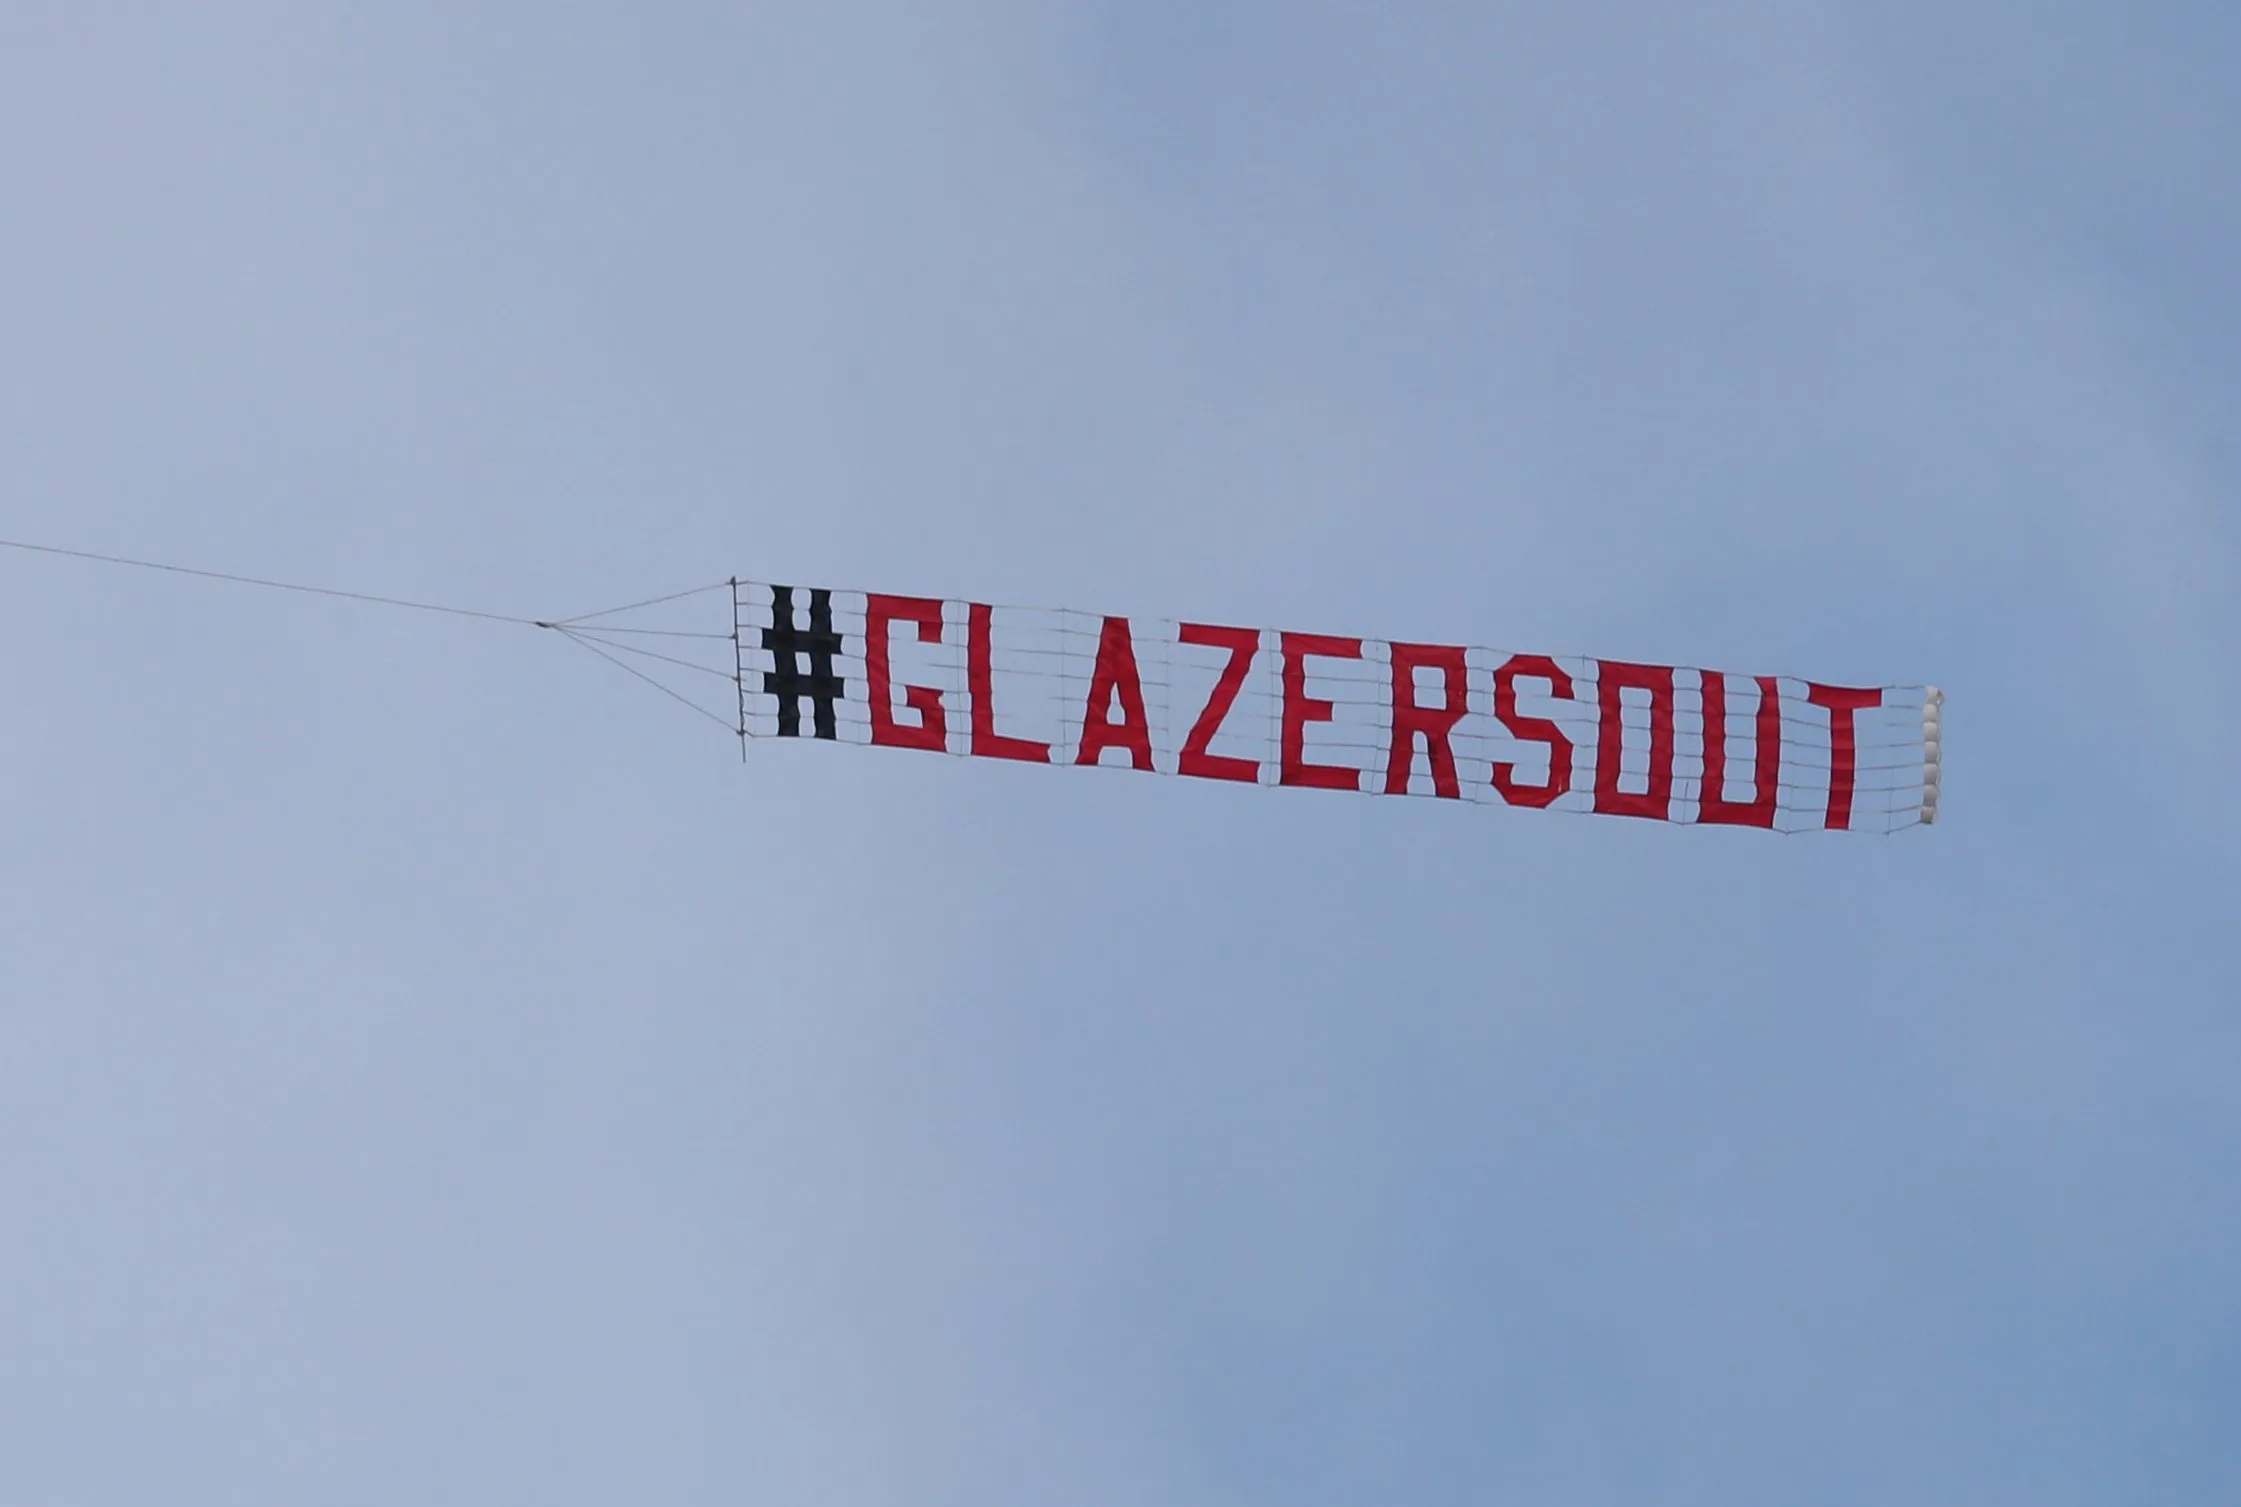 Man Utd Fans Soar High: Glazers Out Banner Flies Above NFL Match